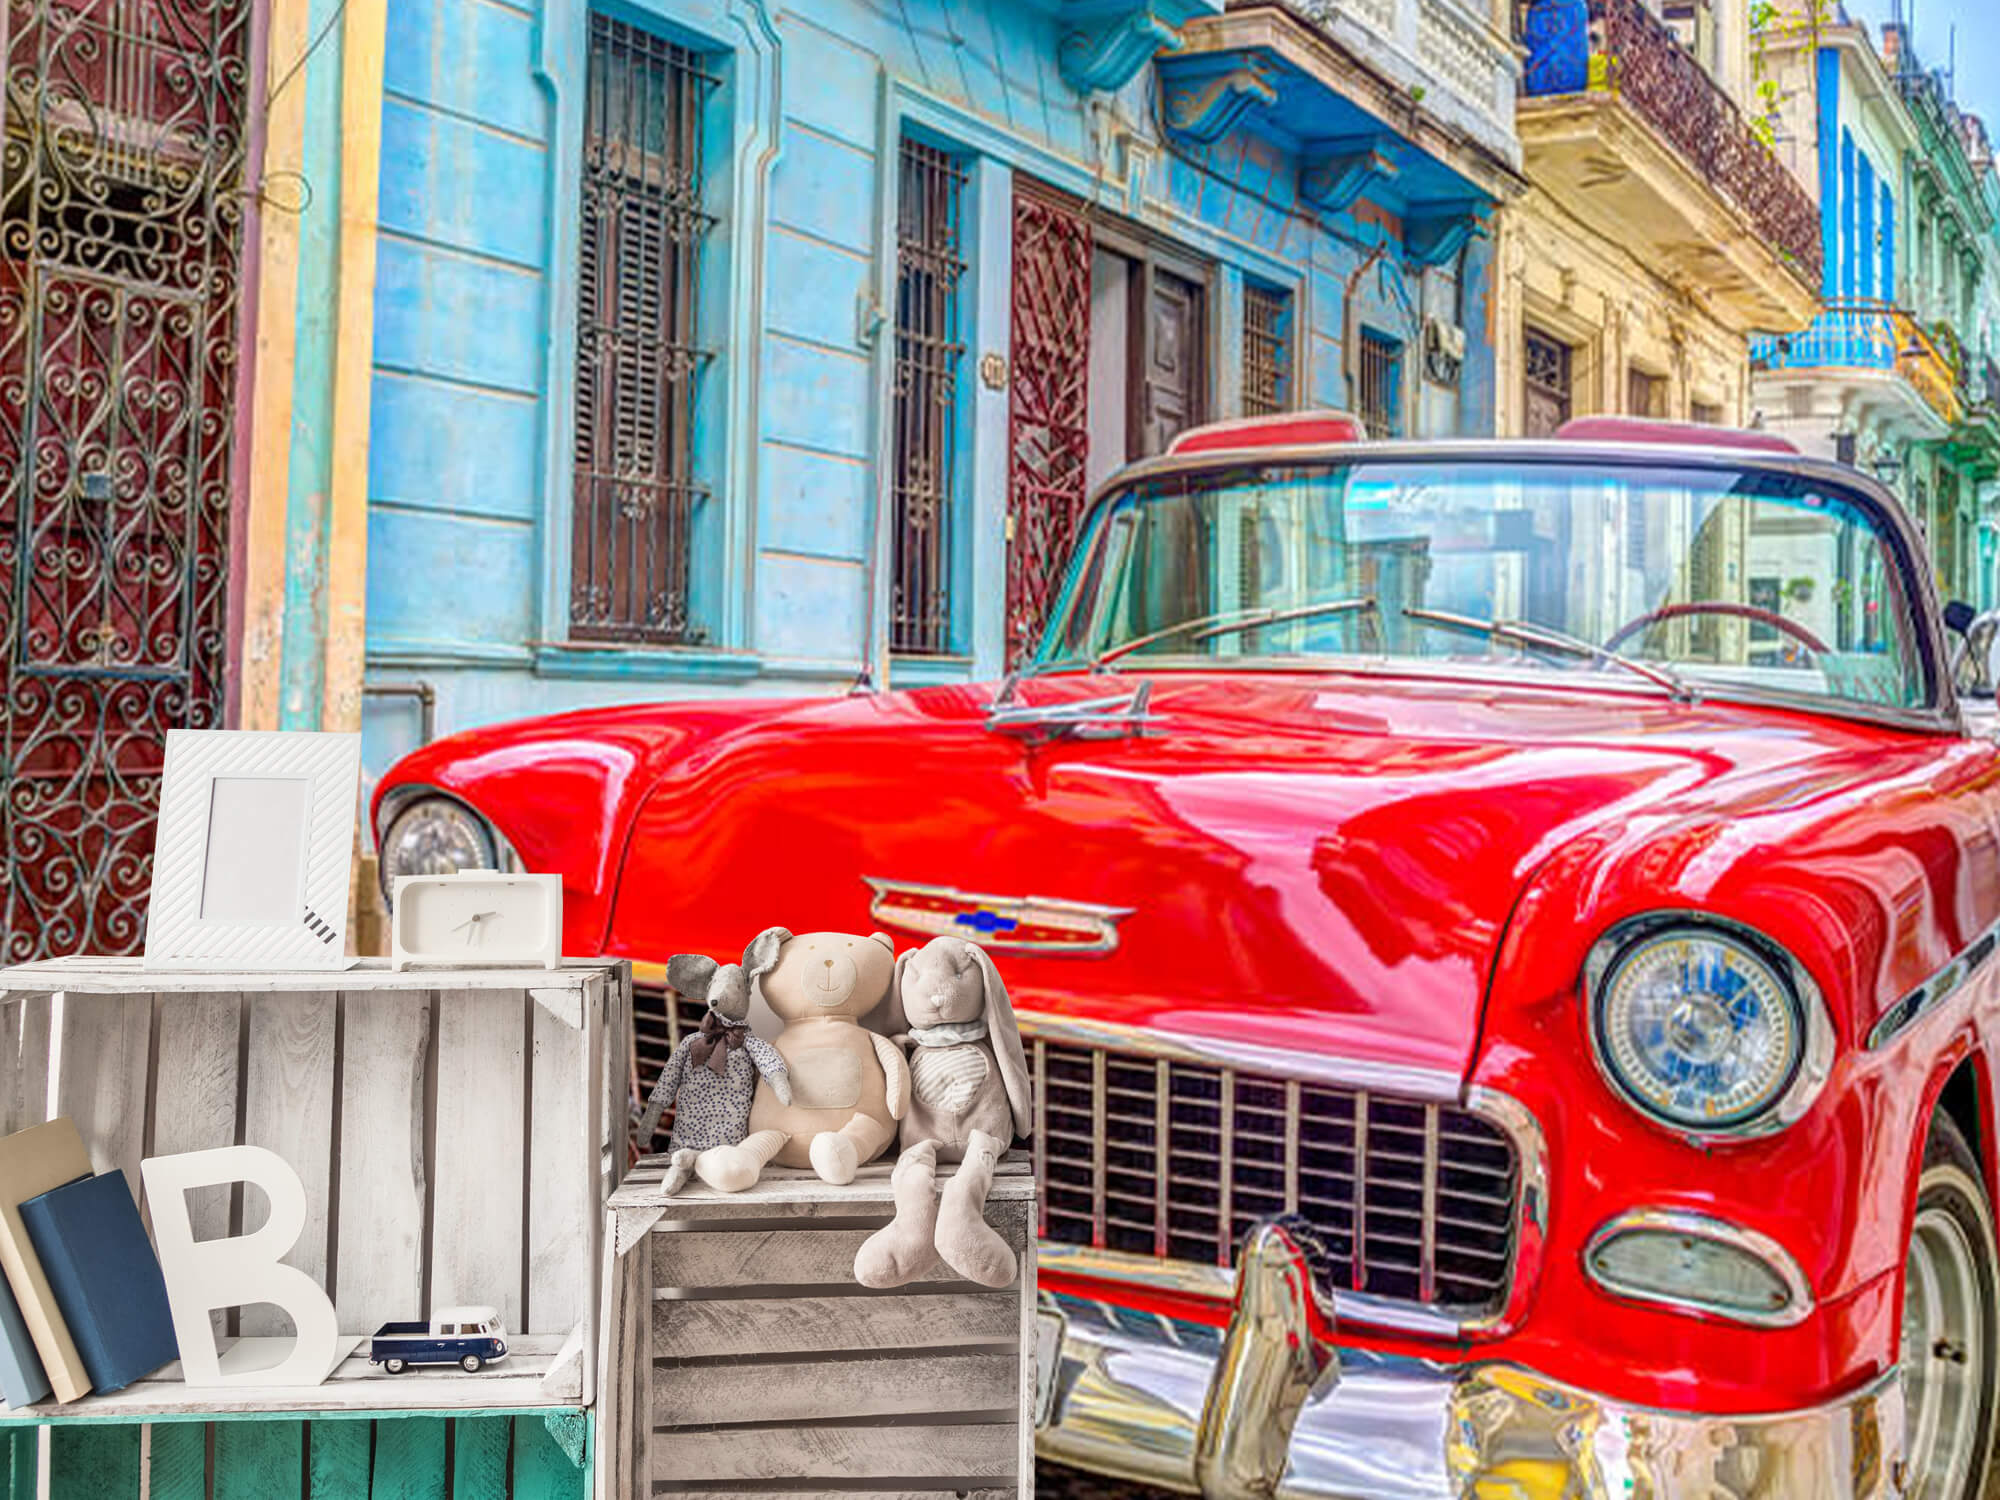  Samochód zabytkowy w Hawanie 12